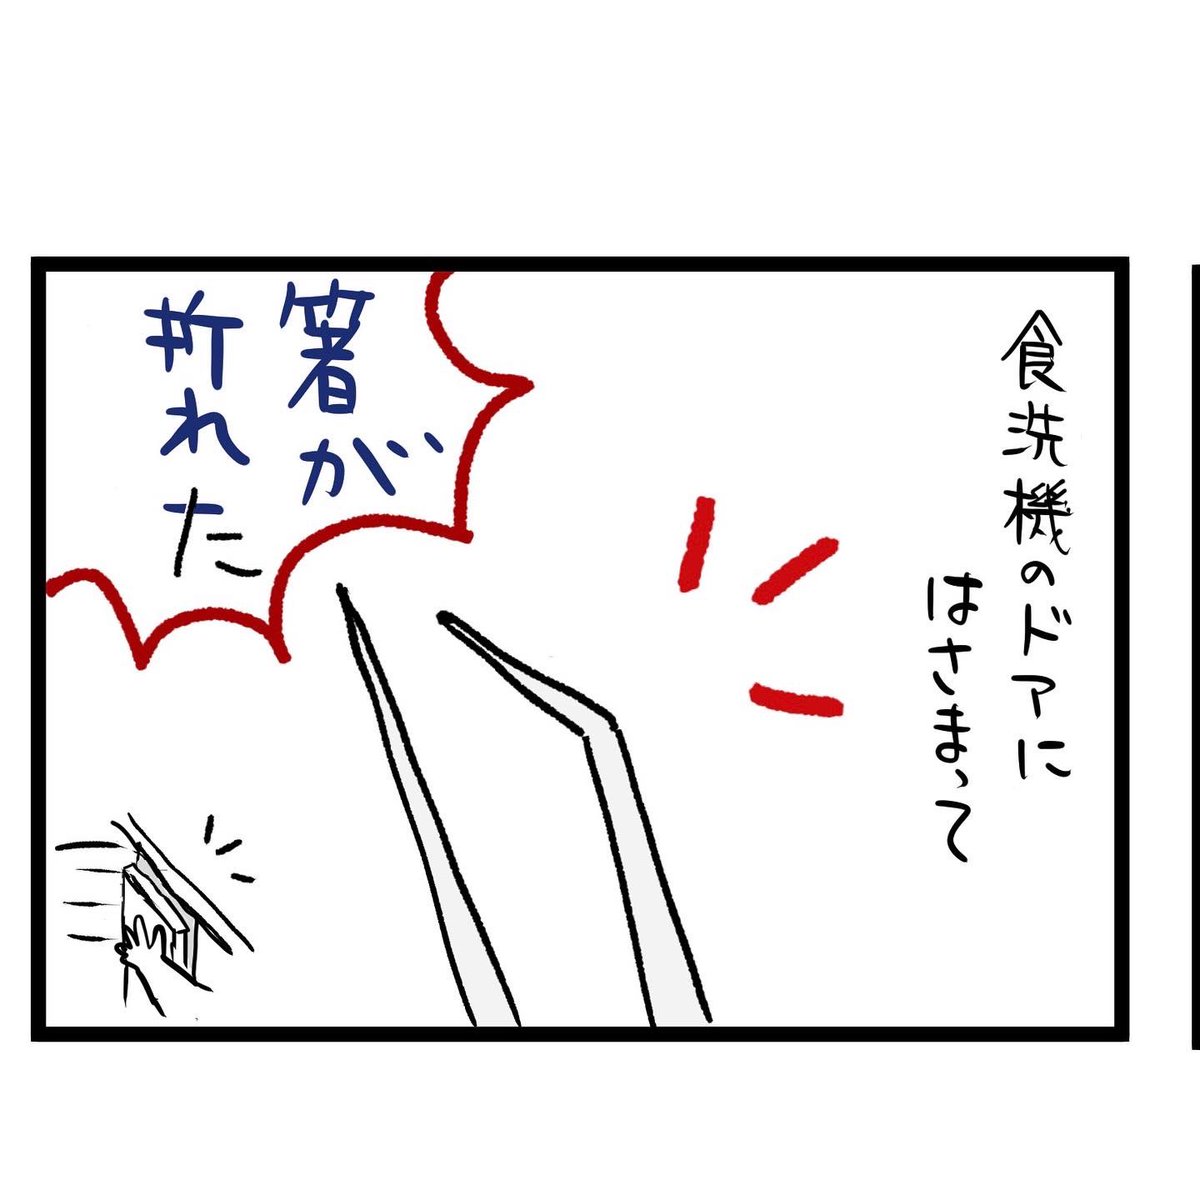 #四コマ漫画
#箸
豚肉に骨!? 